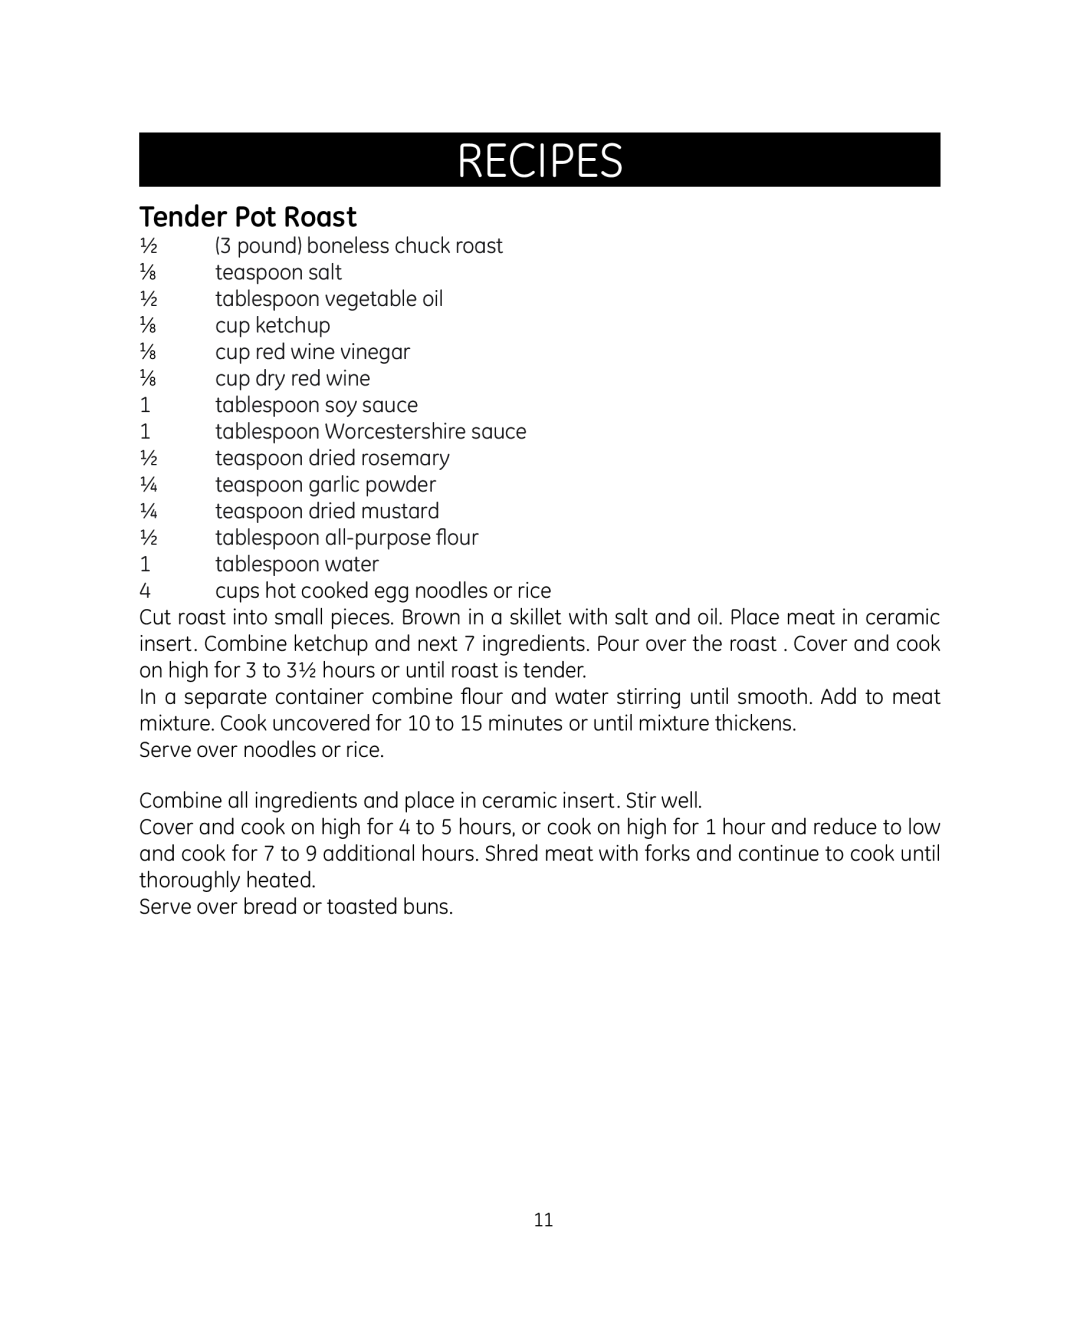 GE 898680 manual Tender Pot Roast, Recipes 